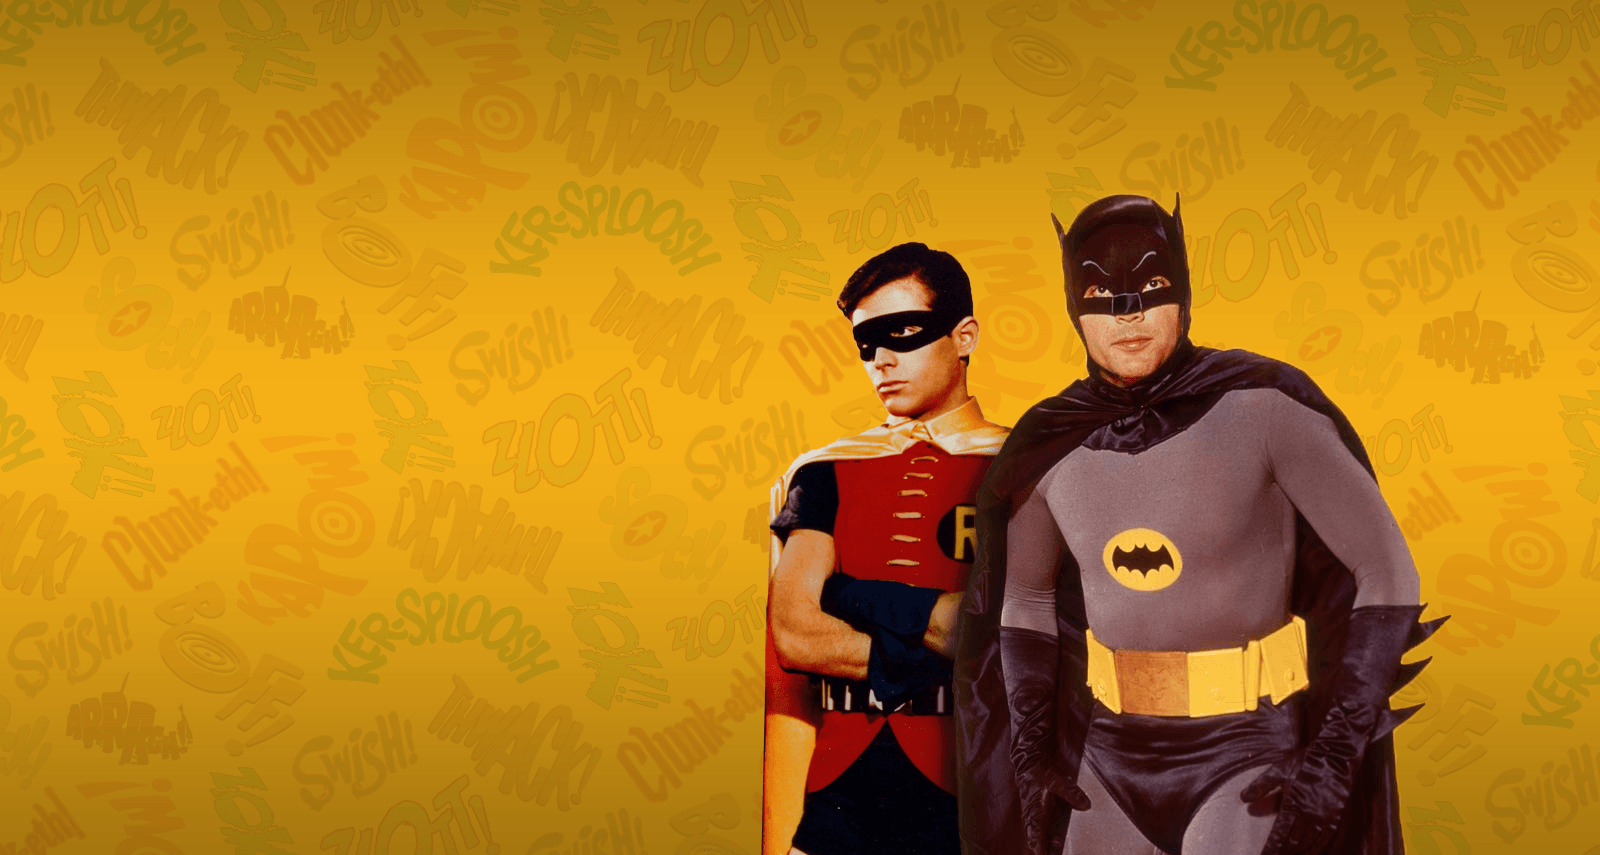 Batman Wallpaper. Action tv shows, Batman, Batman wallpaper